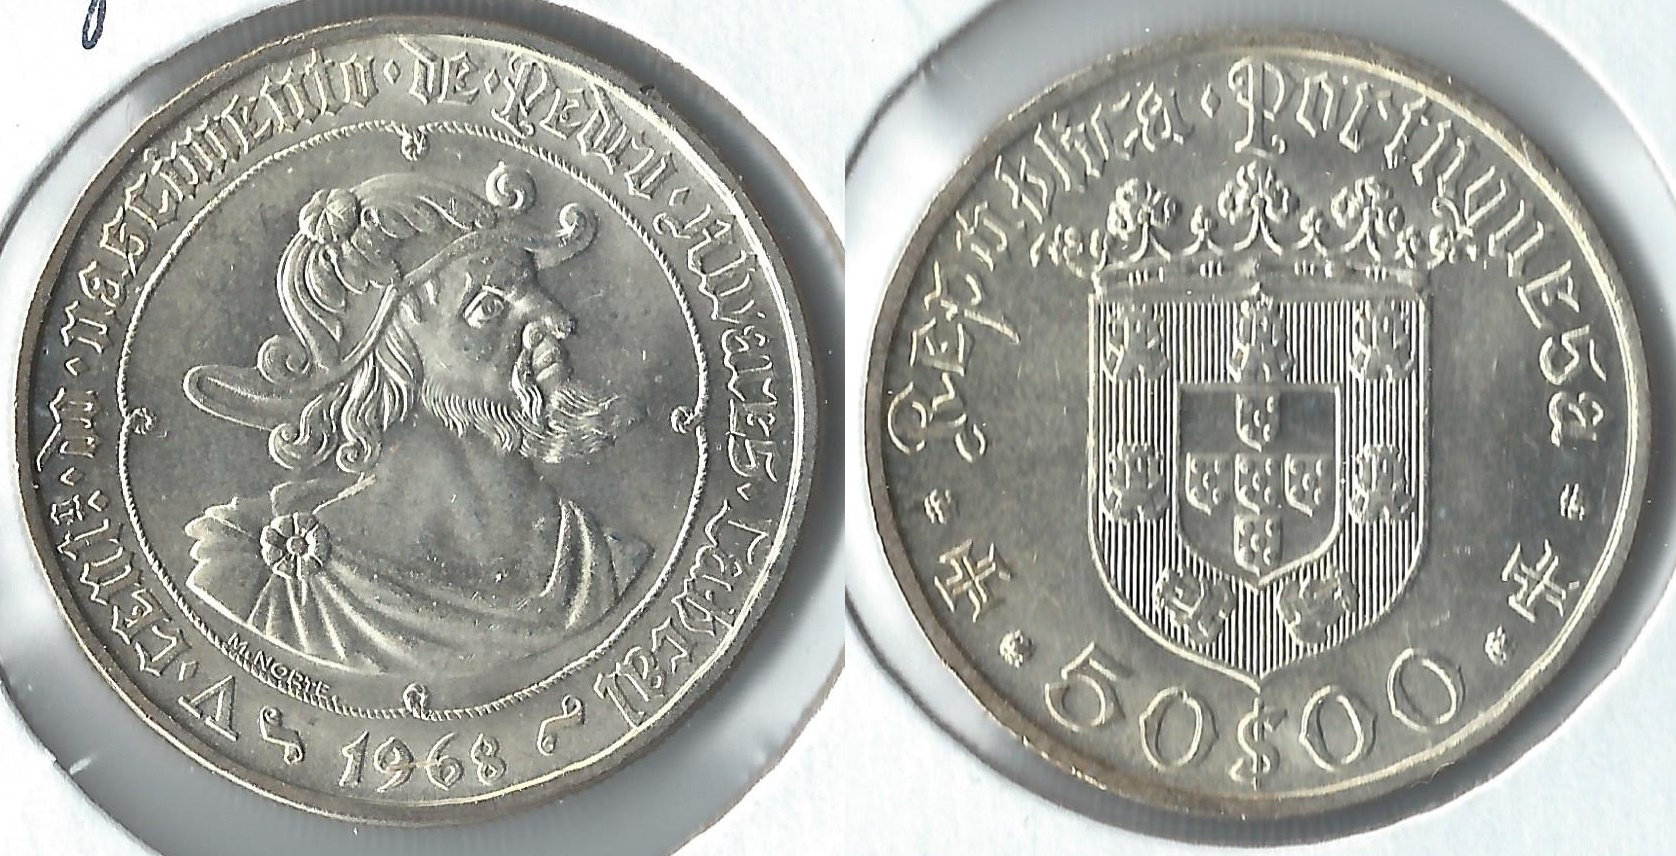 1968 portugal 50 escudos.jpg